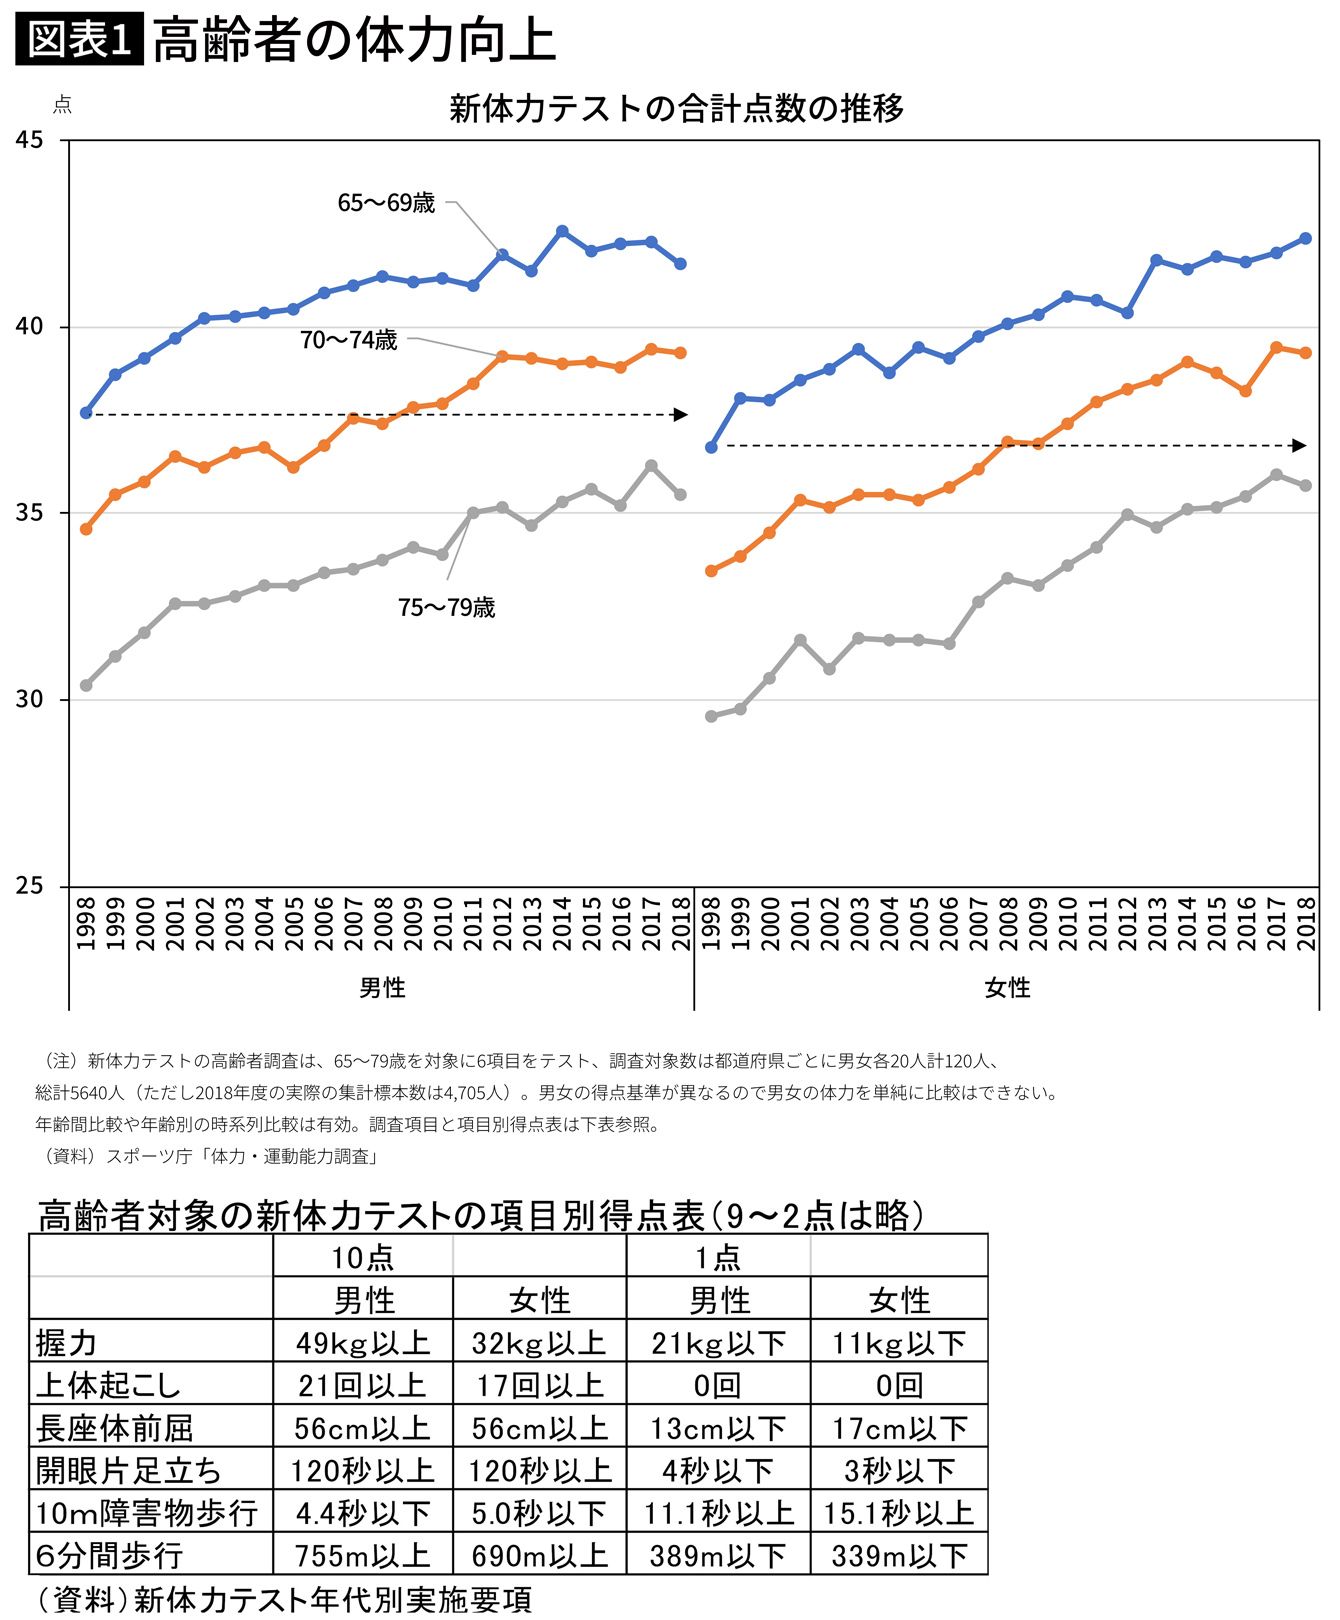 日本の高齢者は20年前より10歳は若返っている 75歳の知力体力は20年前の65歳並み (2ページ目) PRESIDENT Online